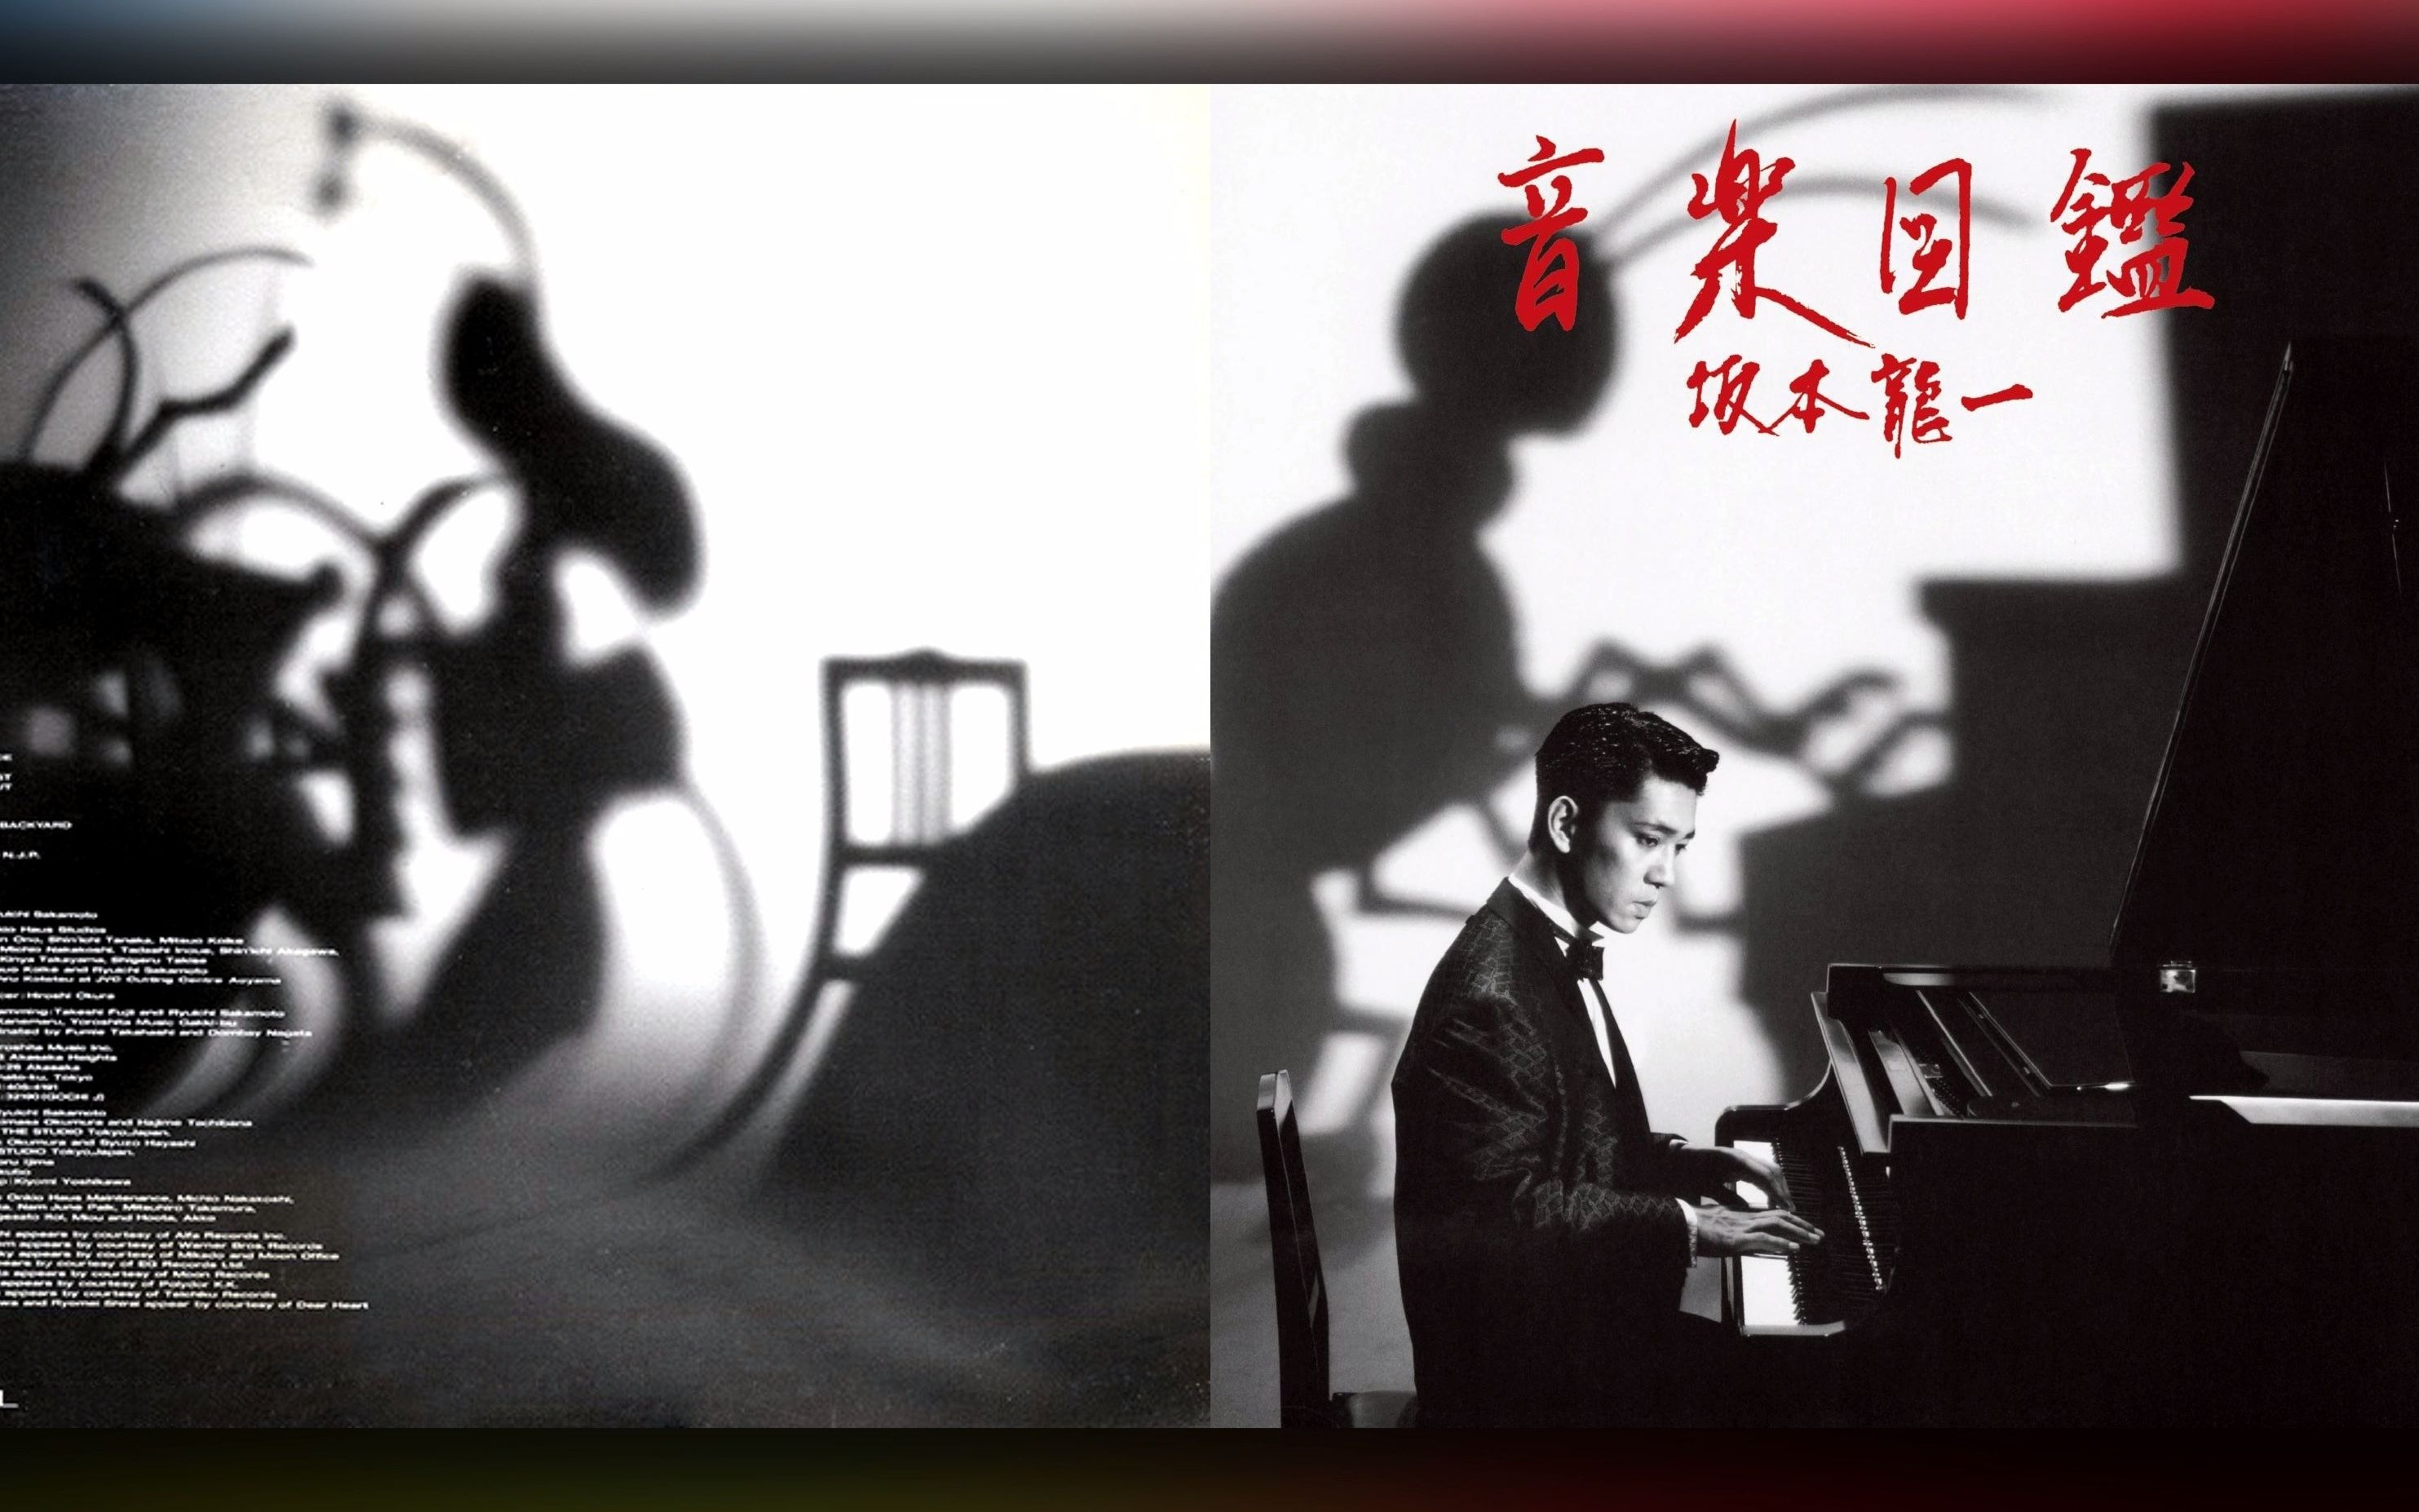 坂本龍一(Ryūichi Sakamoto) - 14 - 1984 - 音楽図鑑(Music 